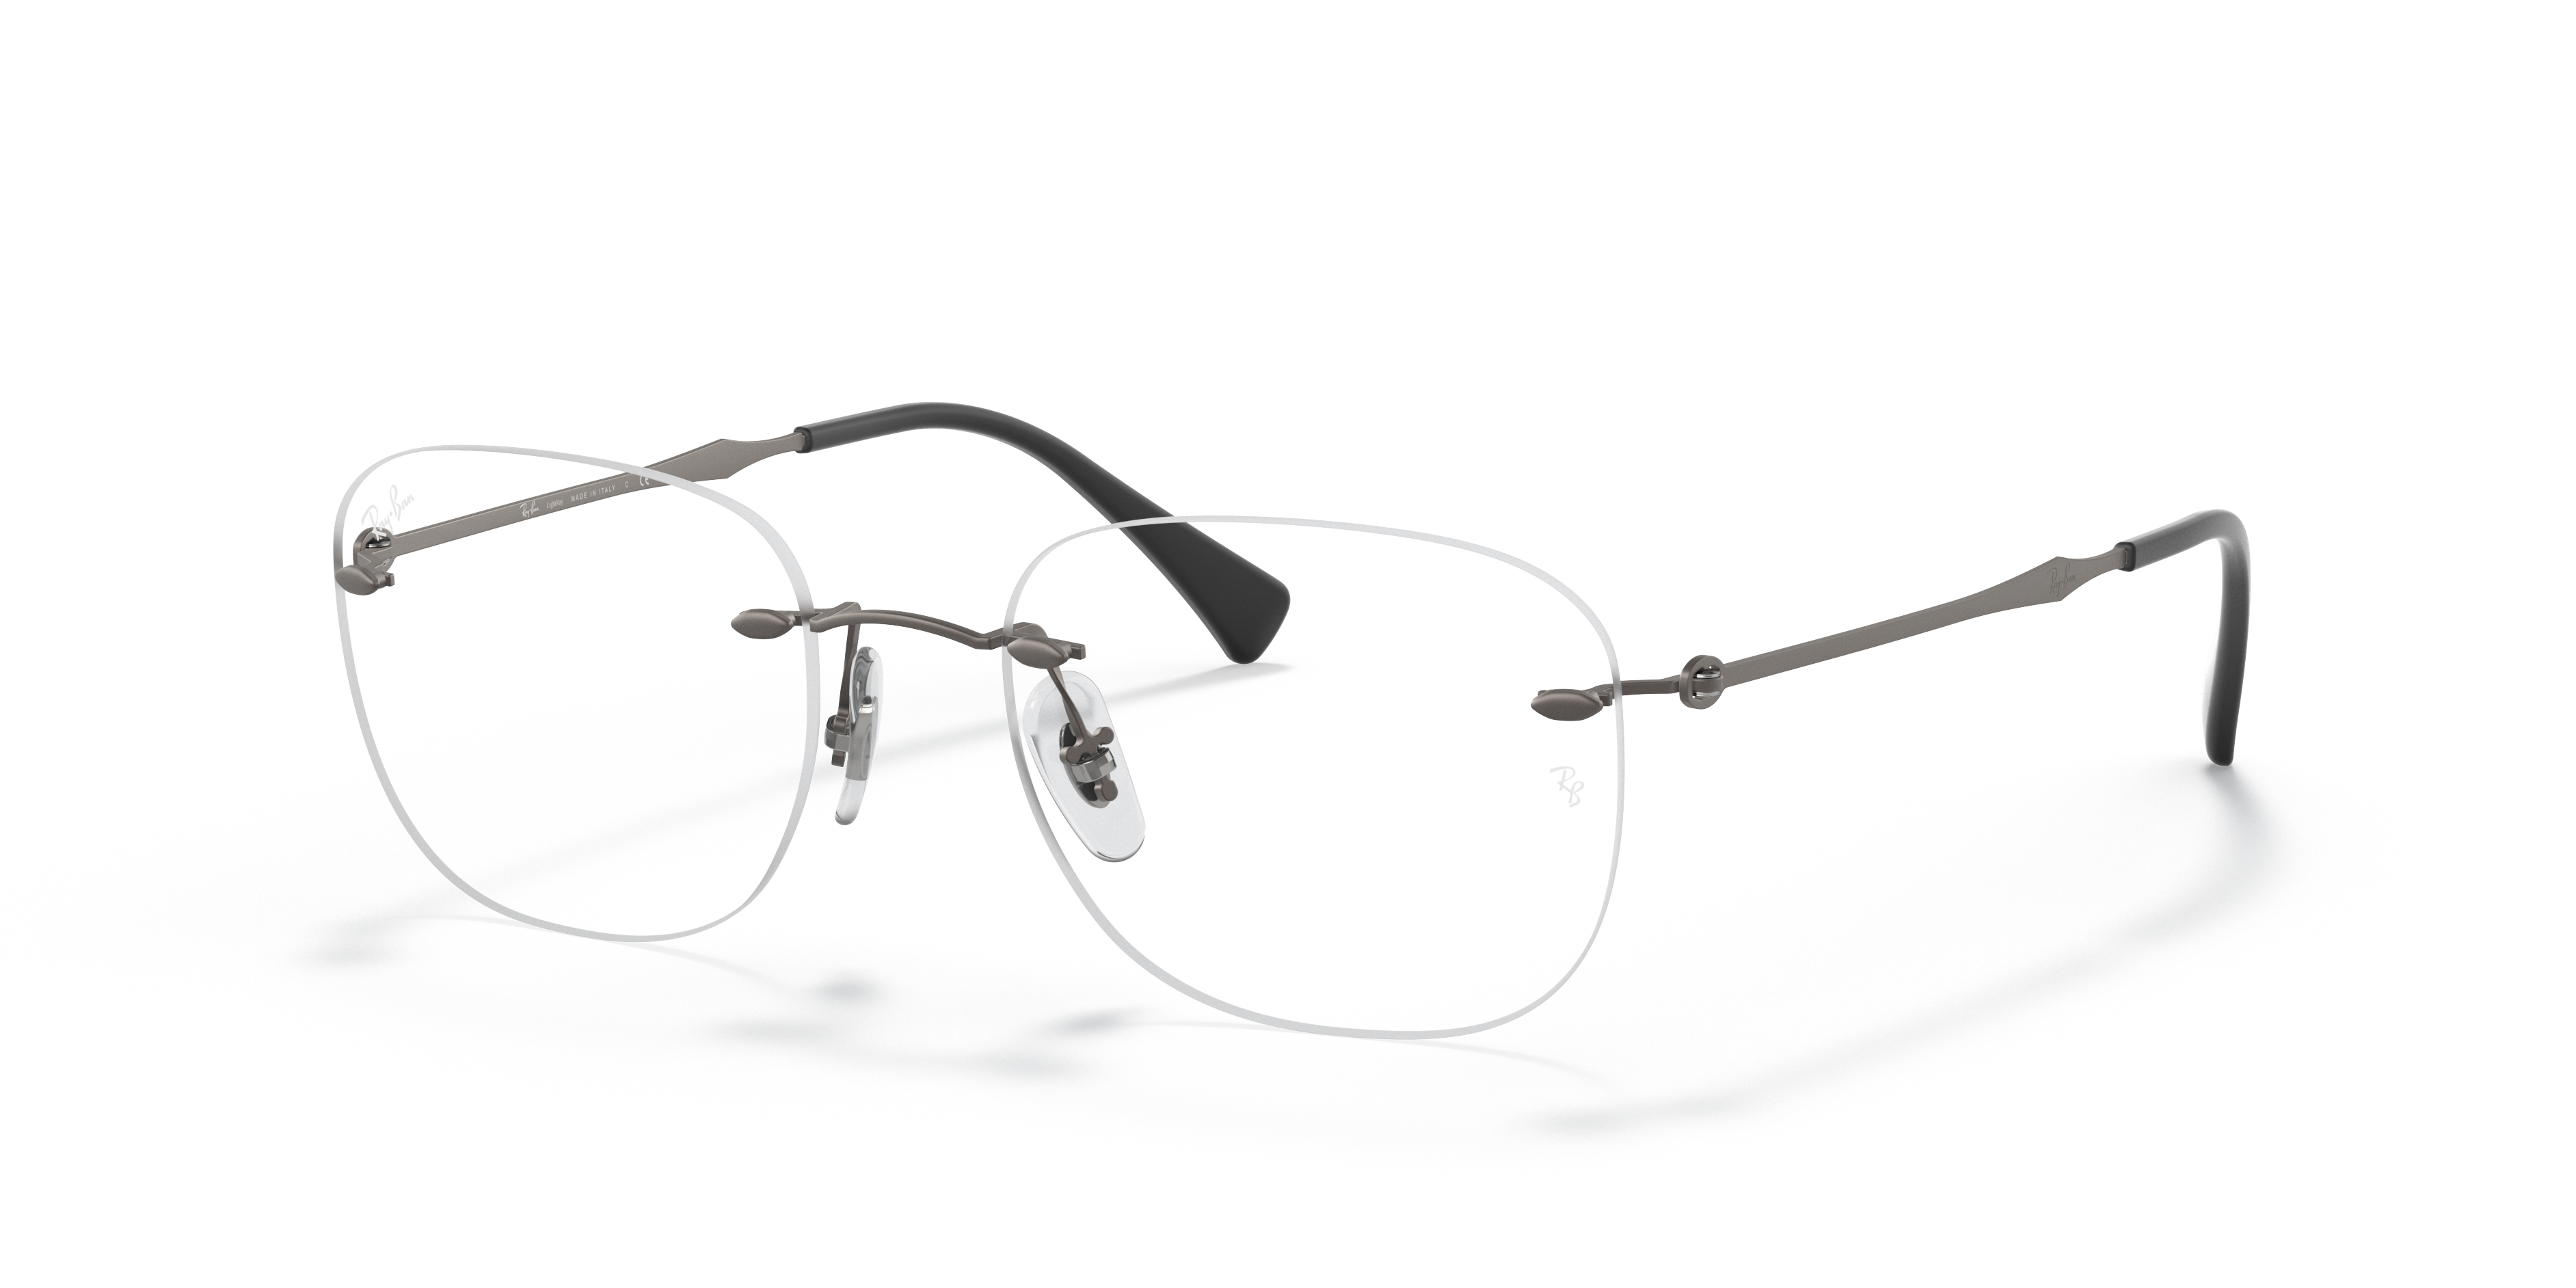 Rb8748 Optics Eyeglasses with Gunmetal Frame | Ray-Ban®